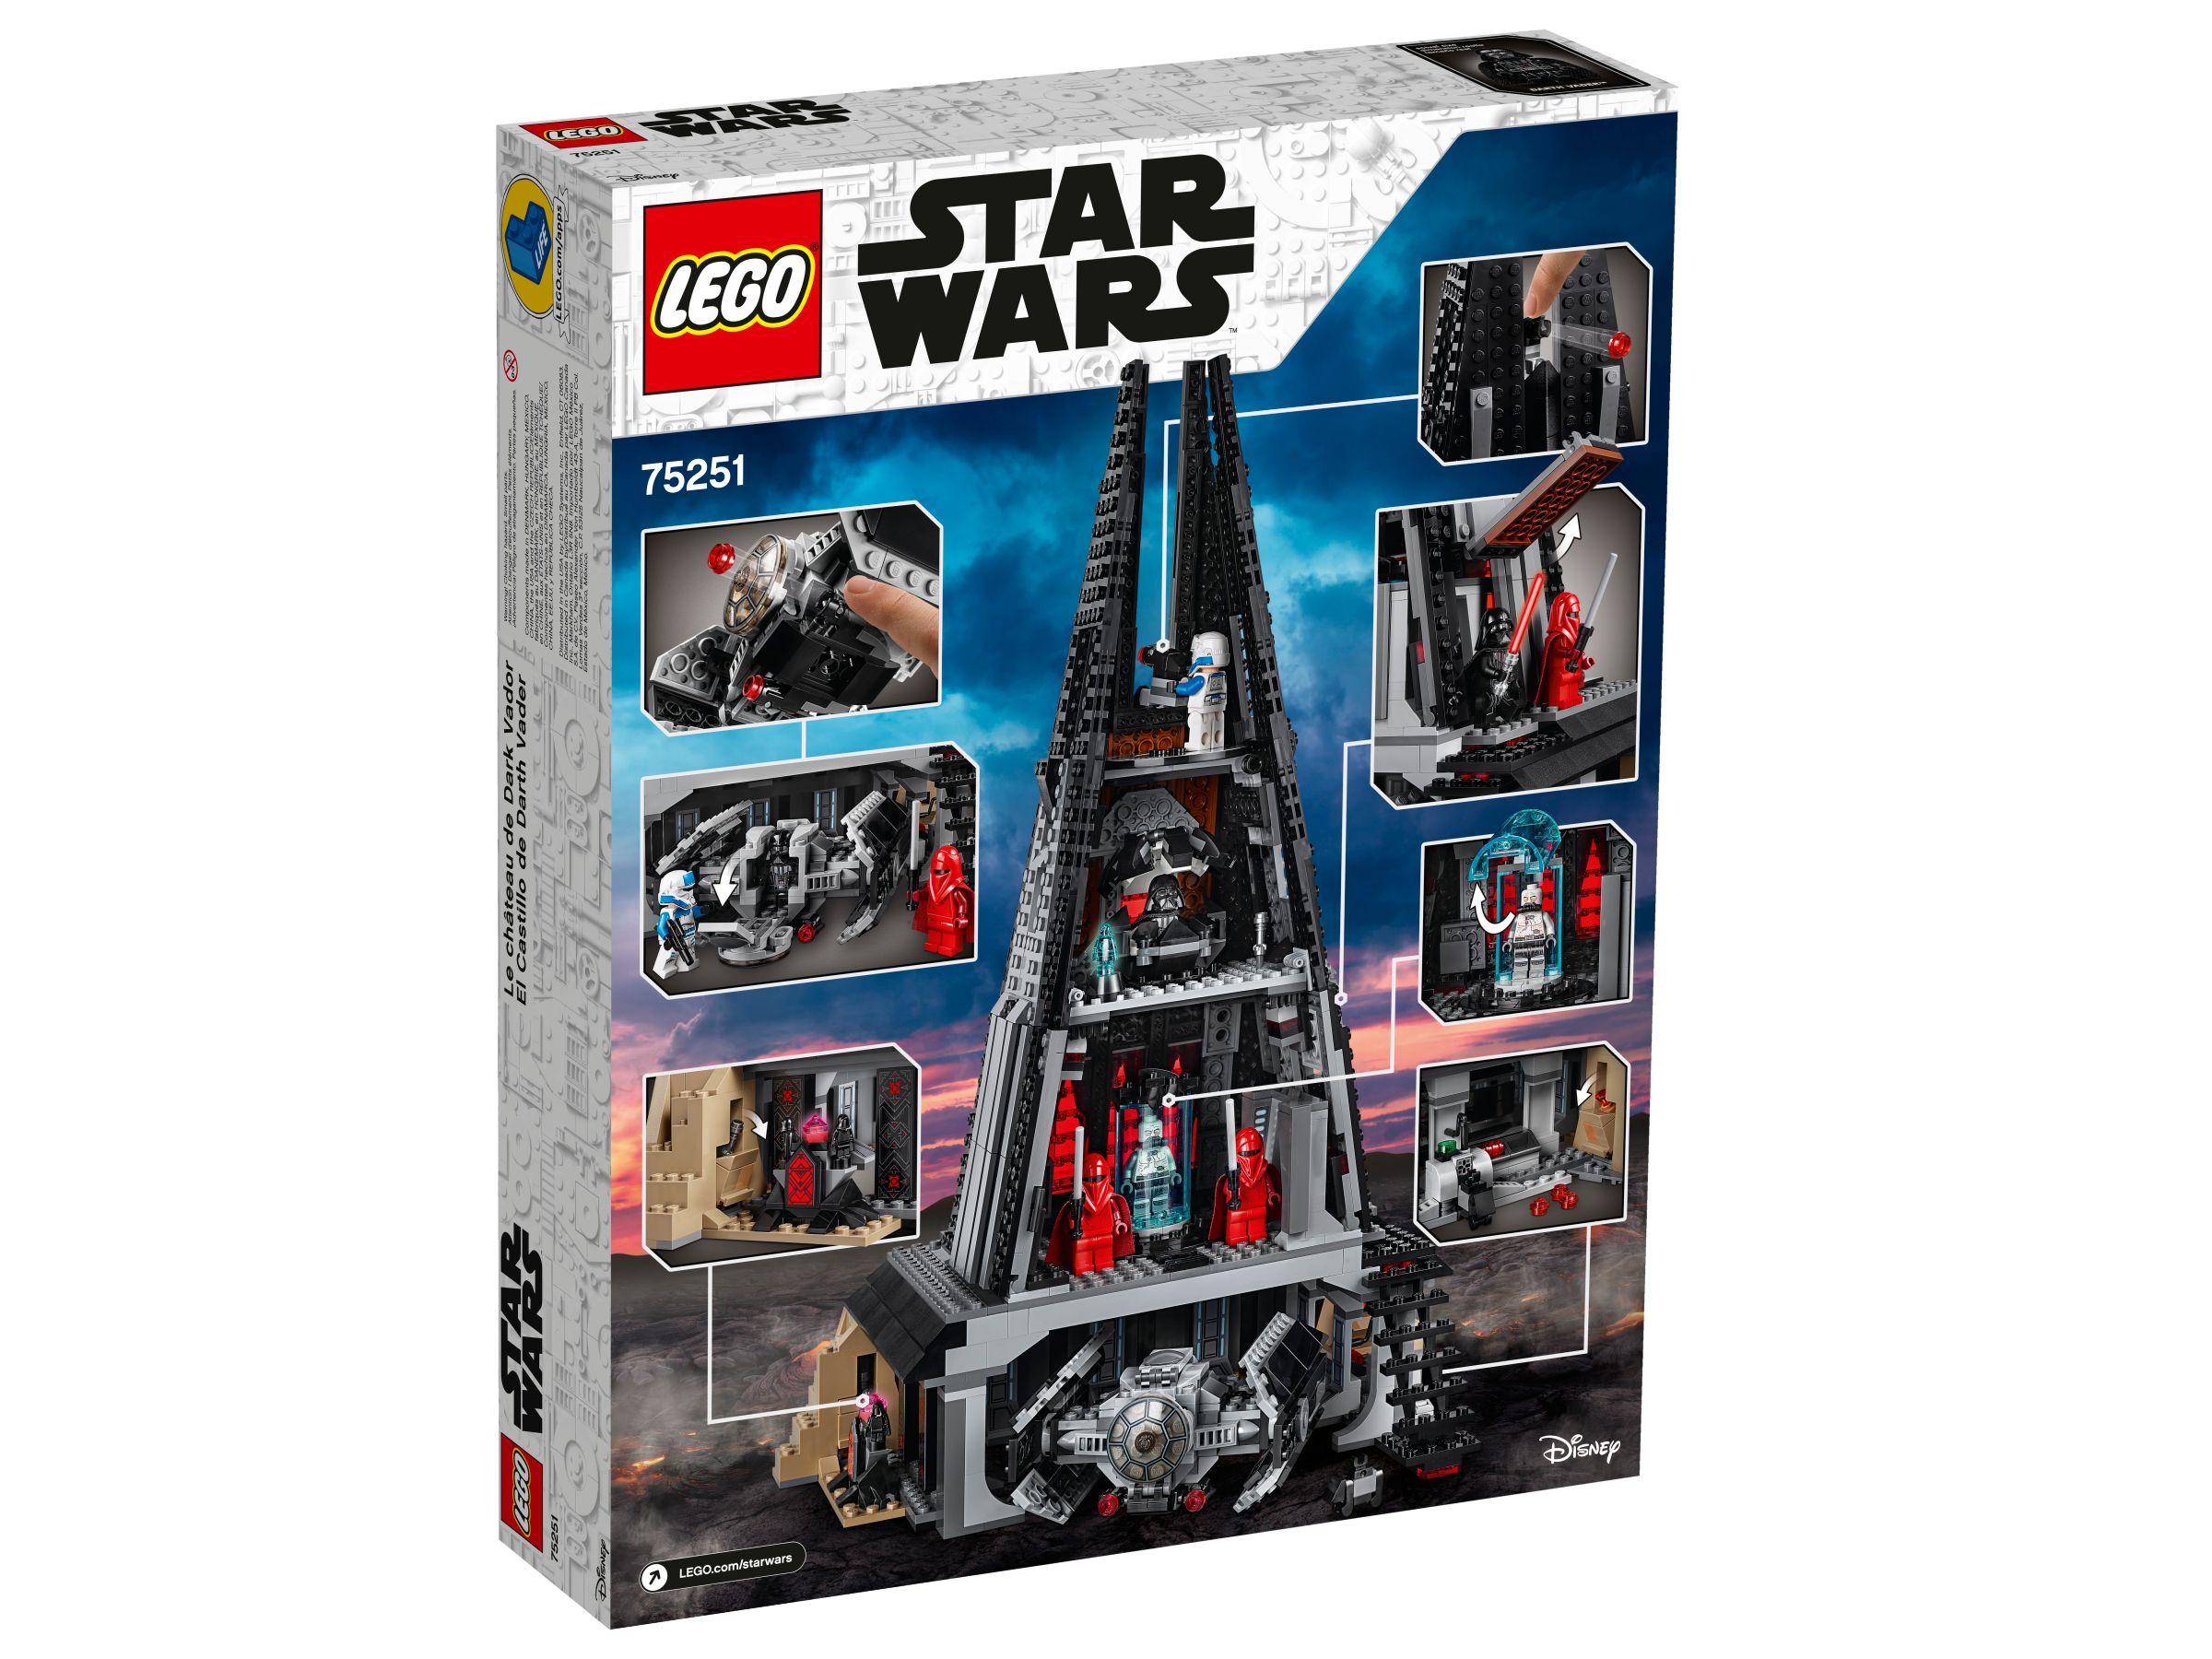 LEGO Star Wars 75251 Darth Vaders Festung LEGO_75251_alt7.jpg